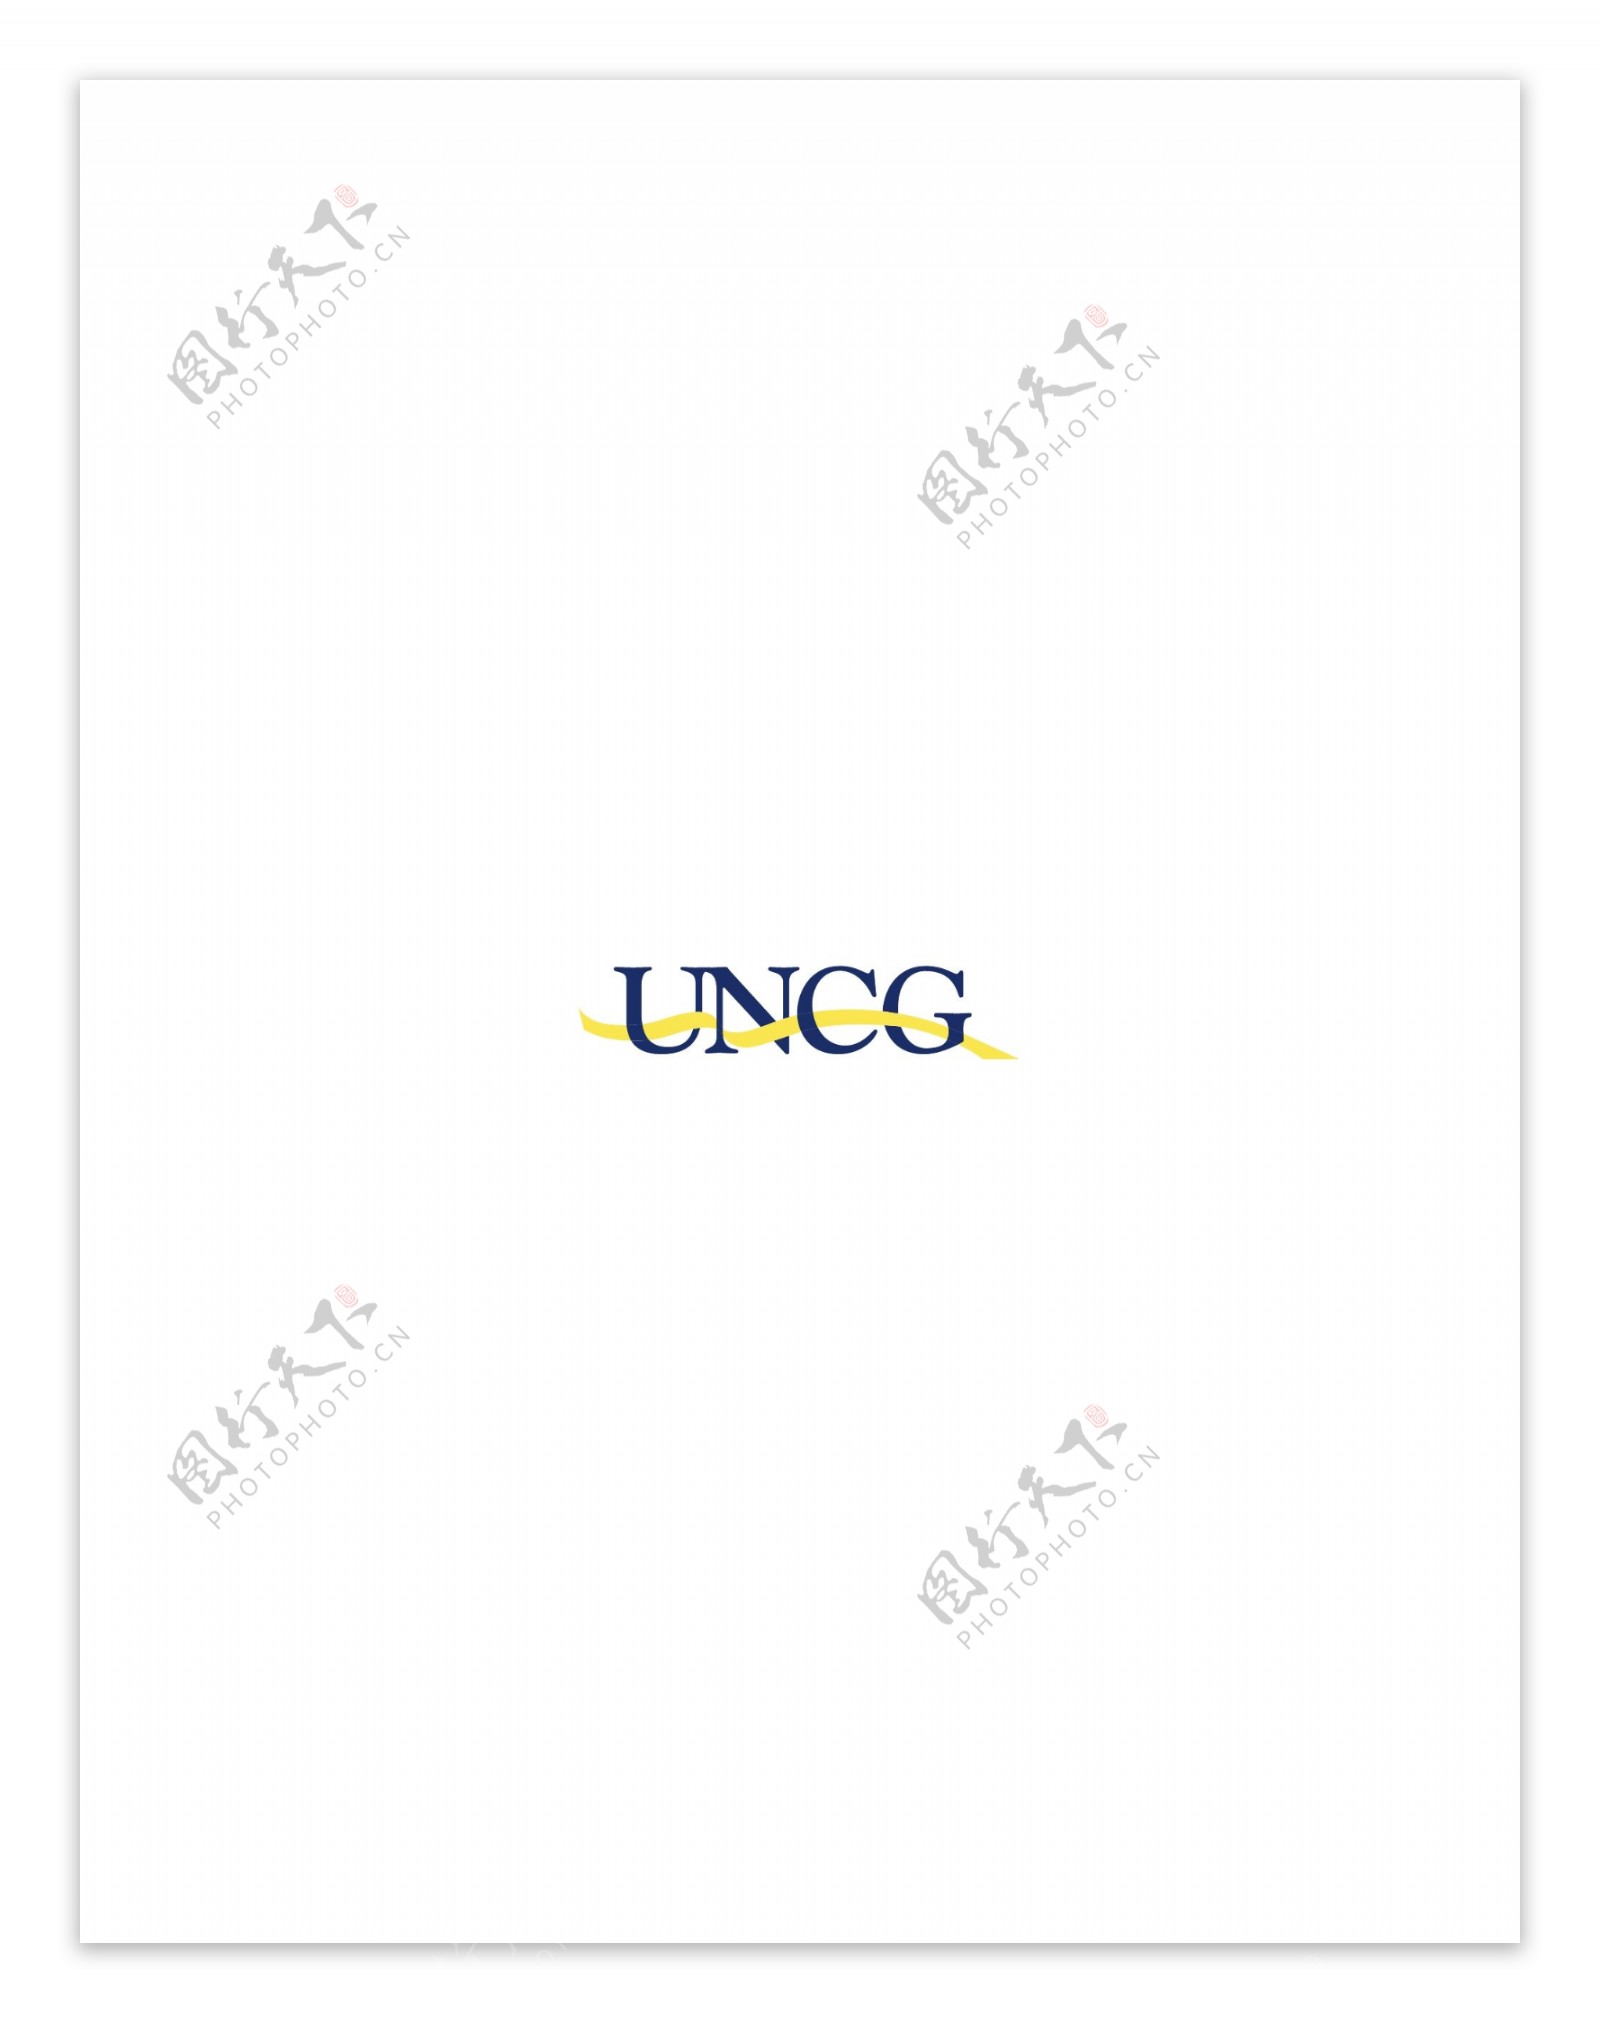 UNCGlogo设计欣赏足球和娱乐相关标志UNCG下载标志设计欣赏